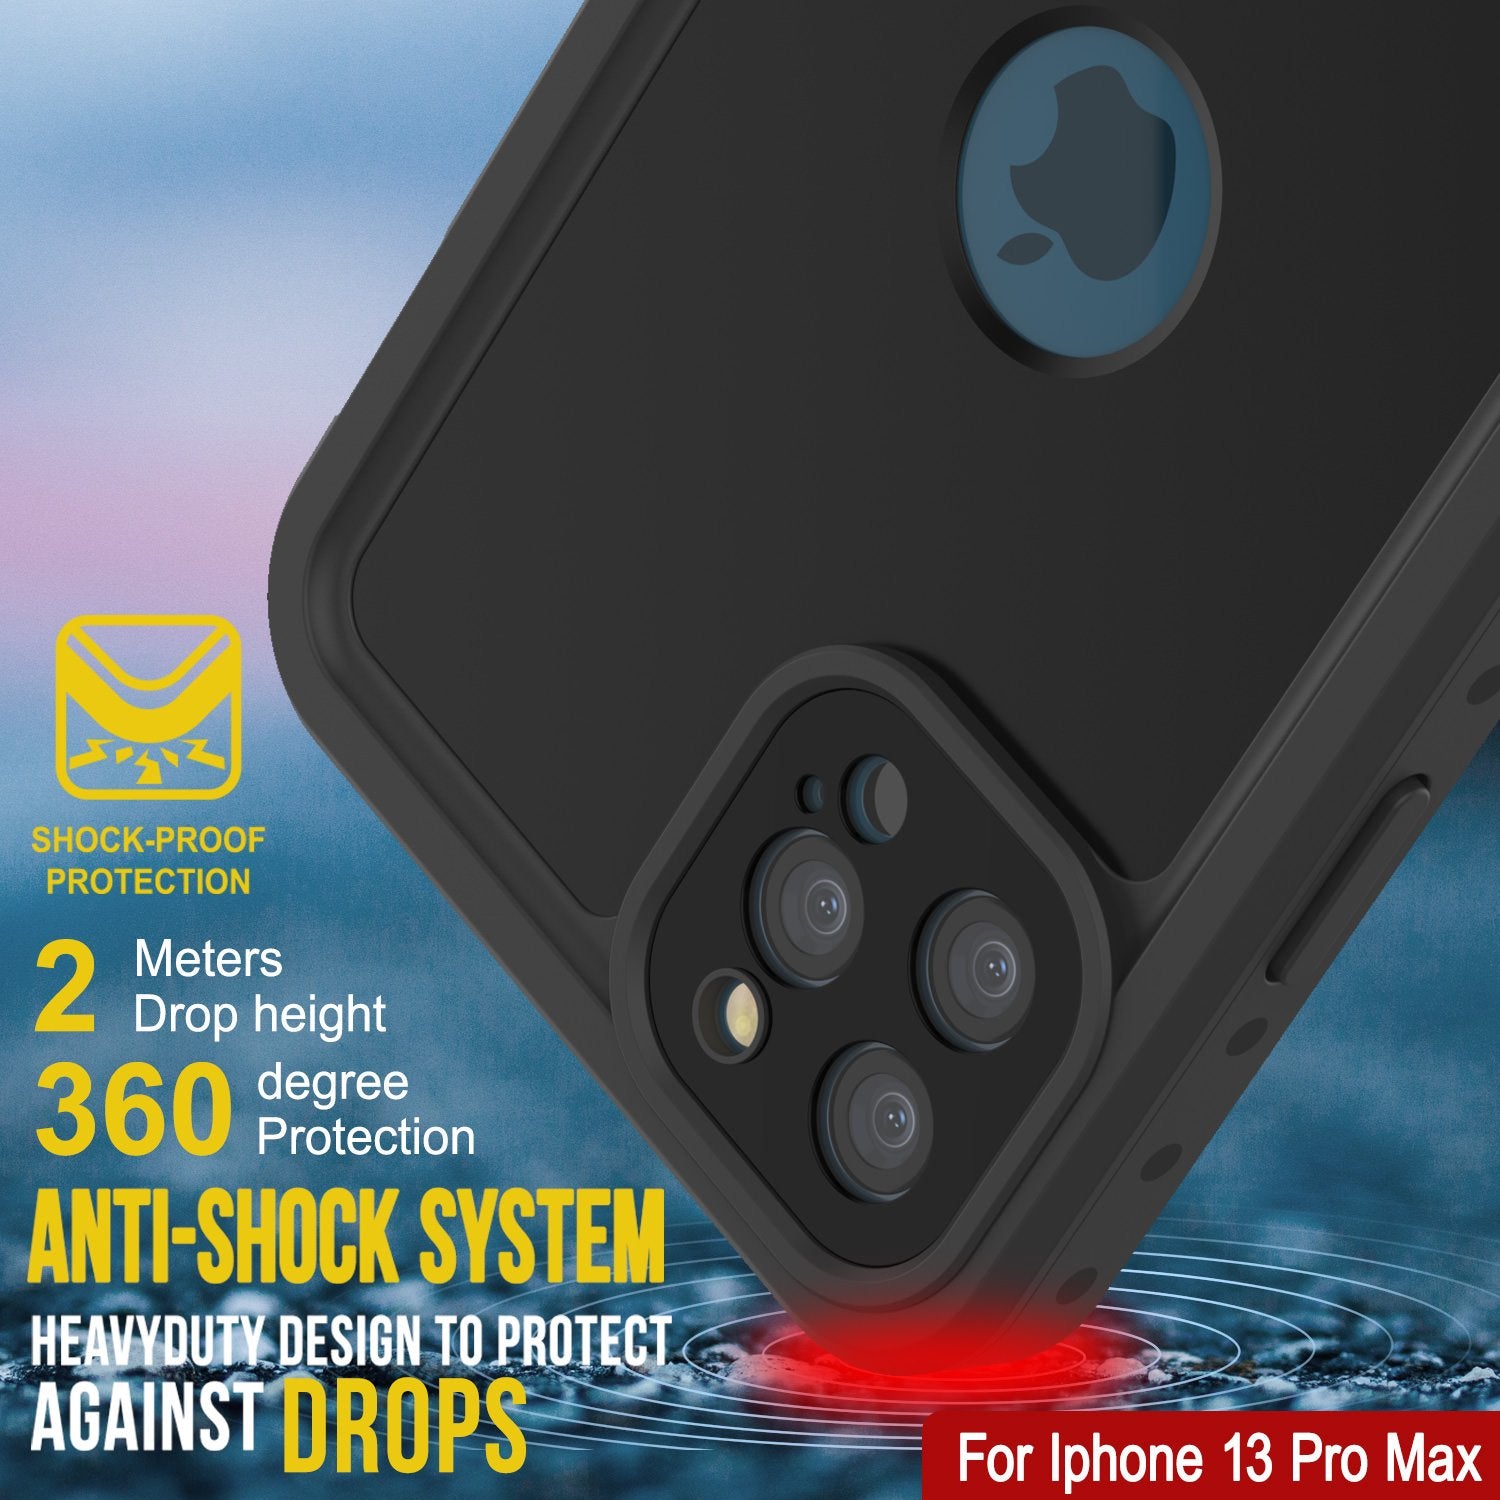 iPhone 13 Pro Max Waterproof IP68 Case, Punkcase [Black] [StudStar Series] [Slim Fit]